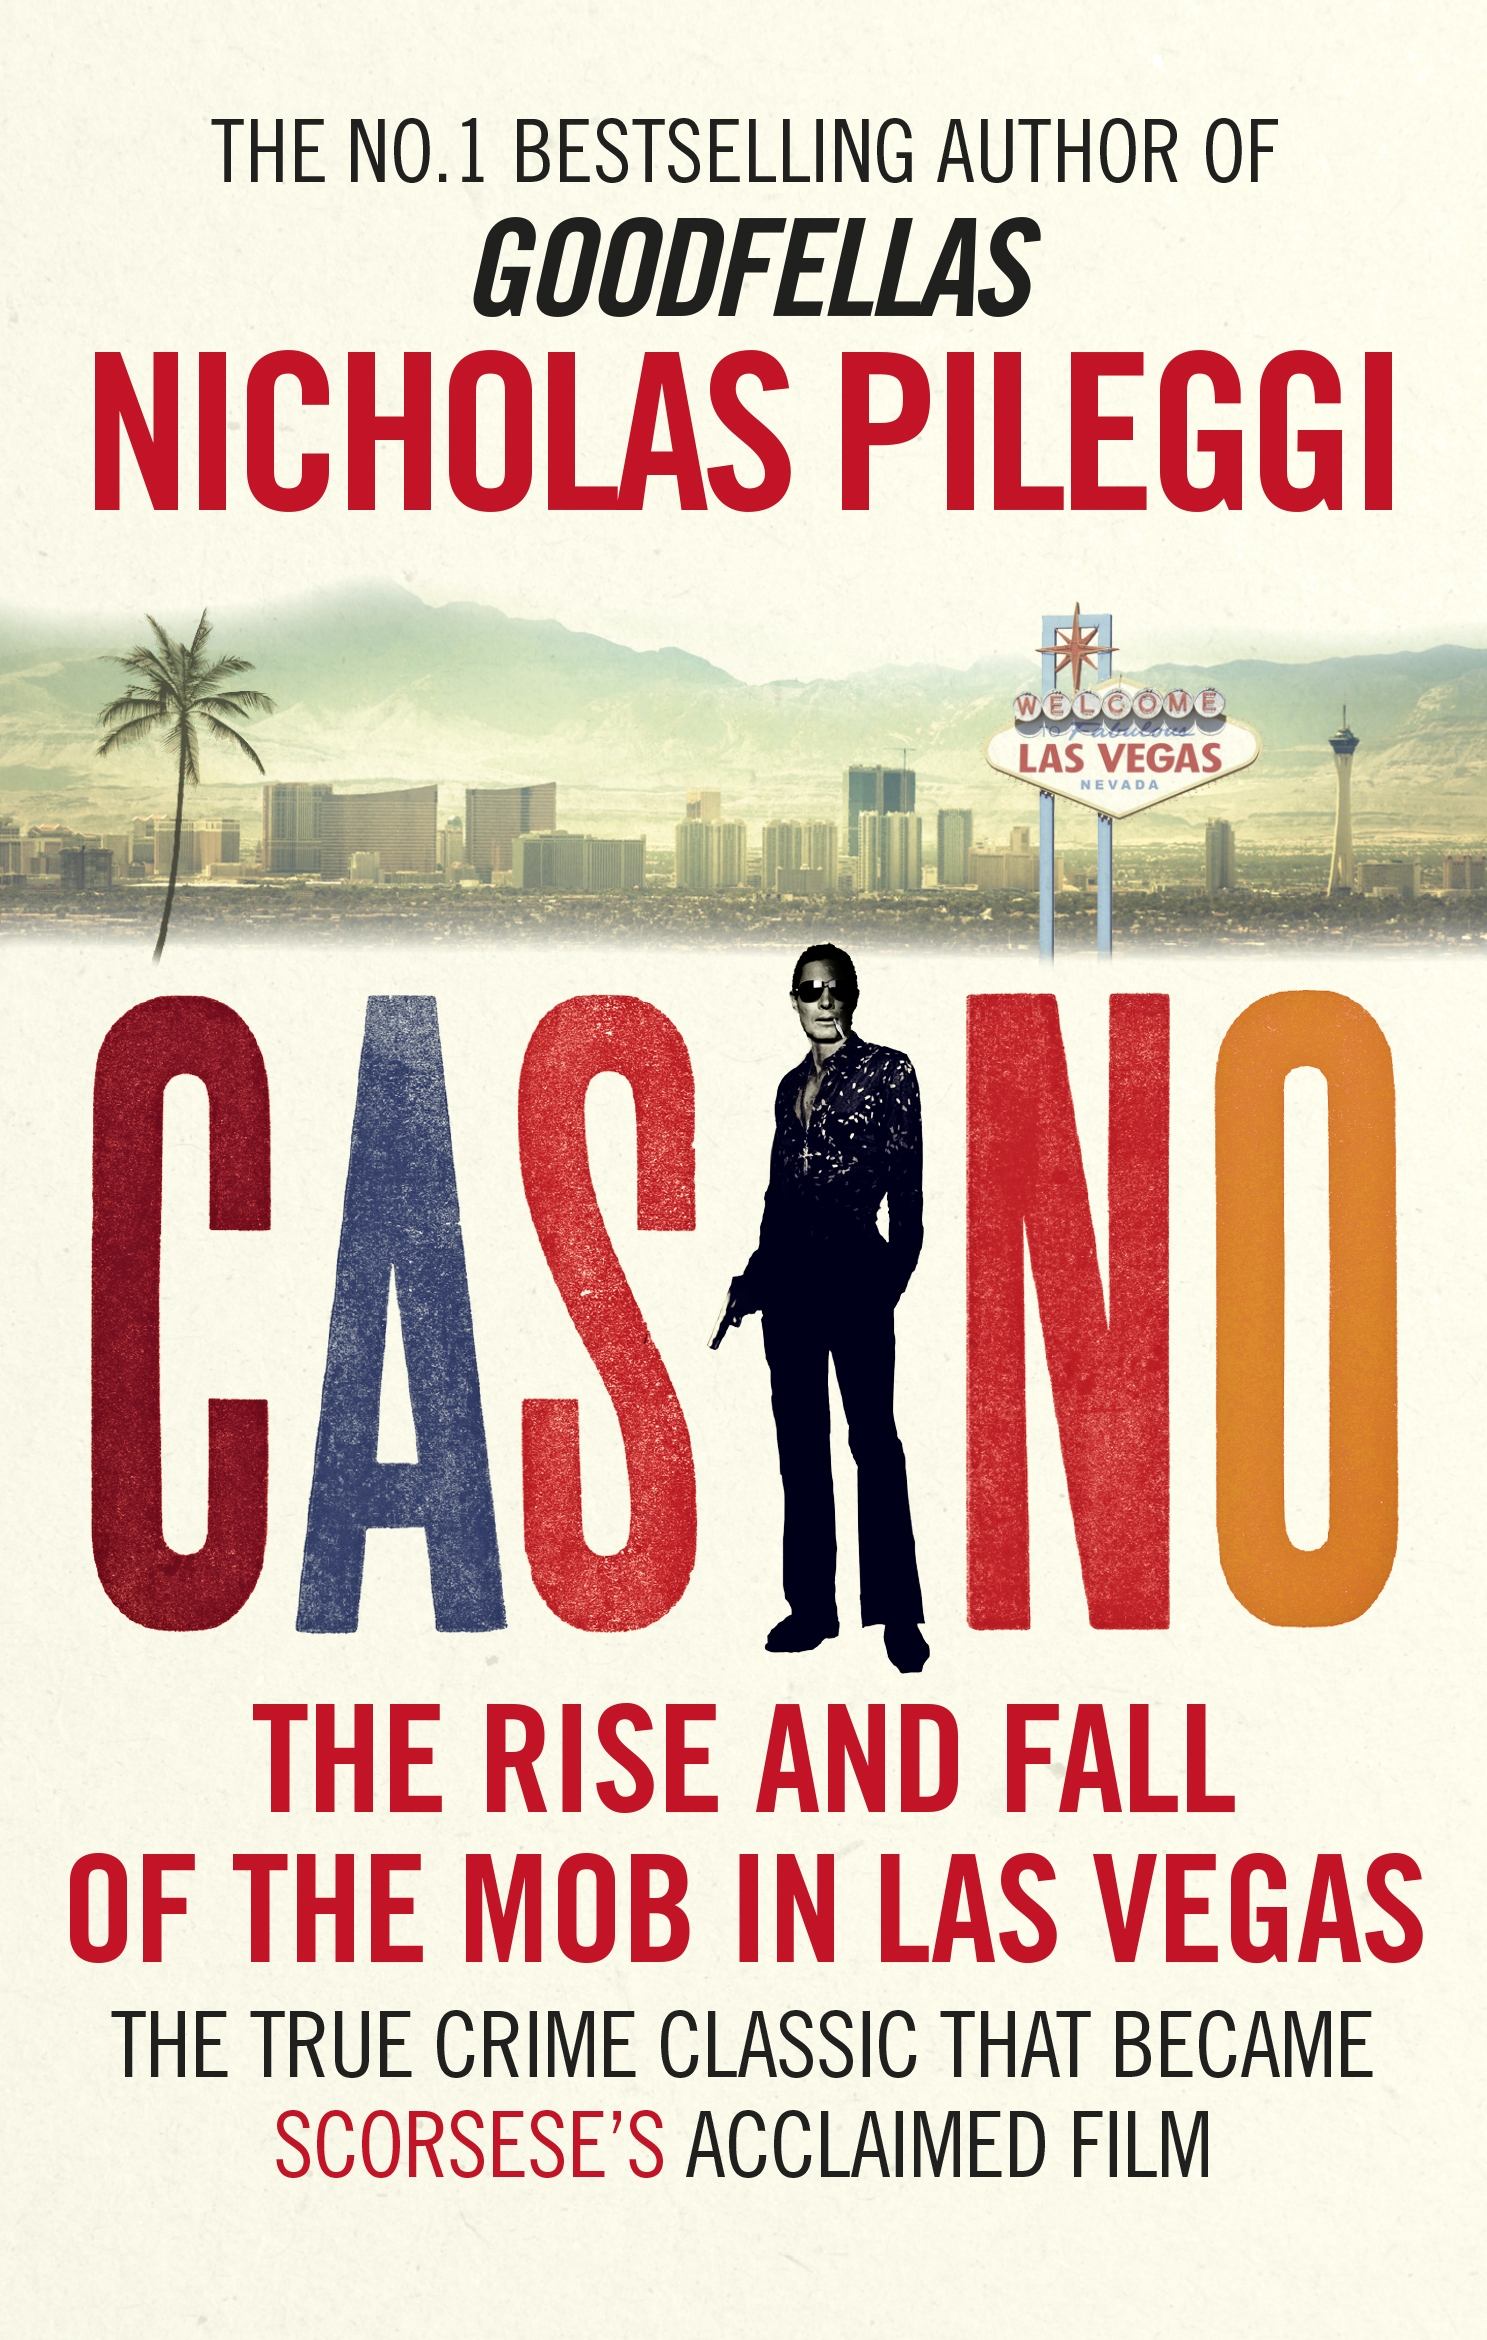 Book For Casino